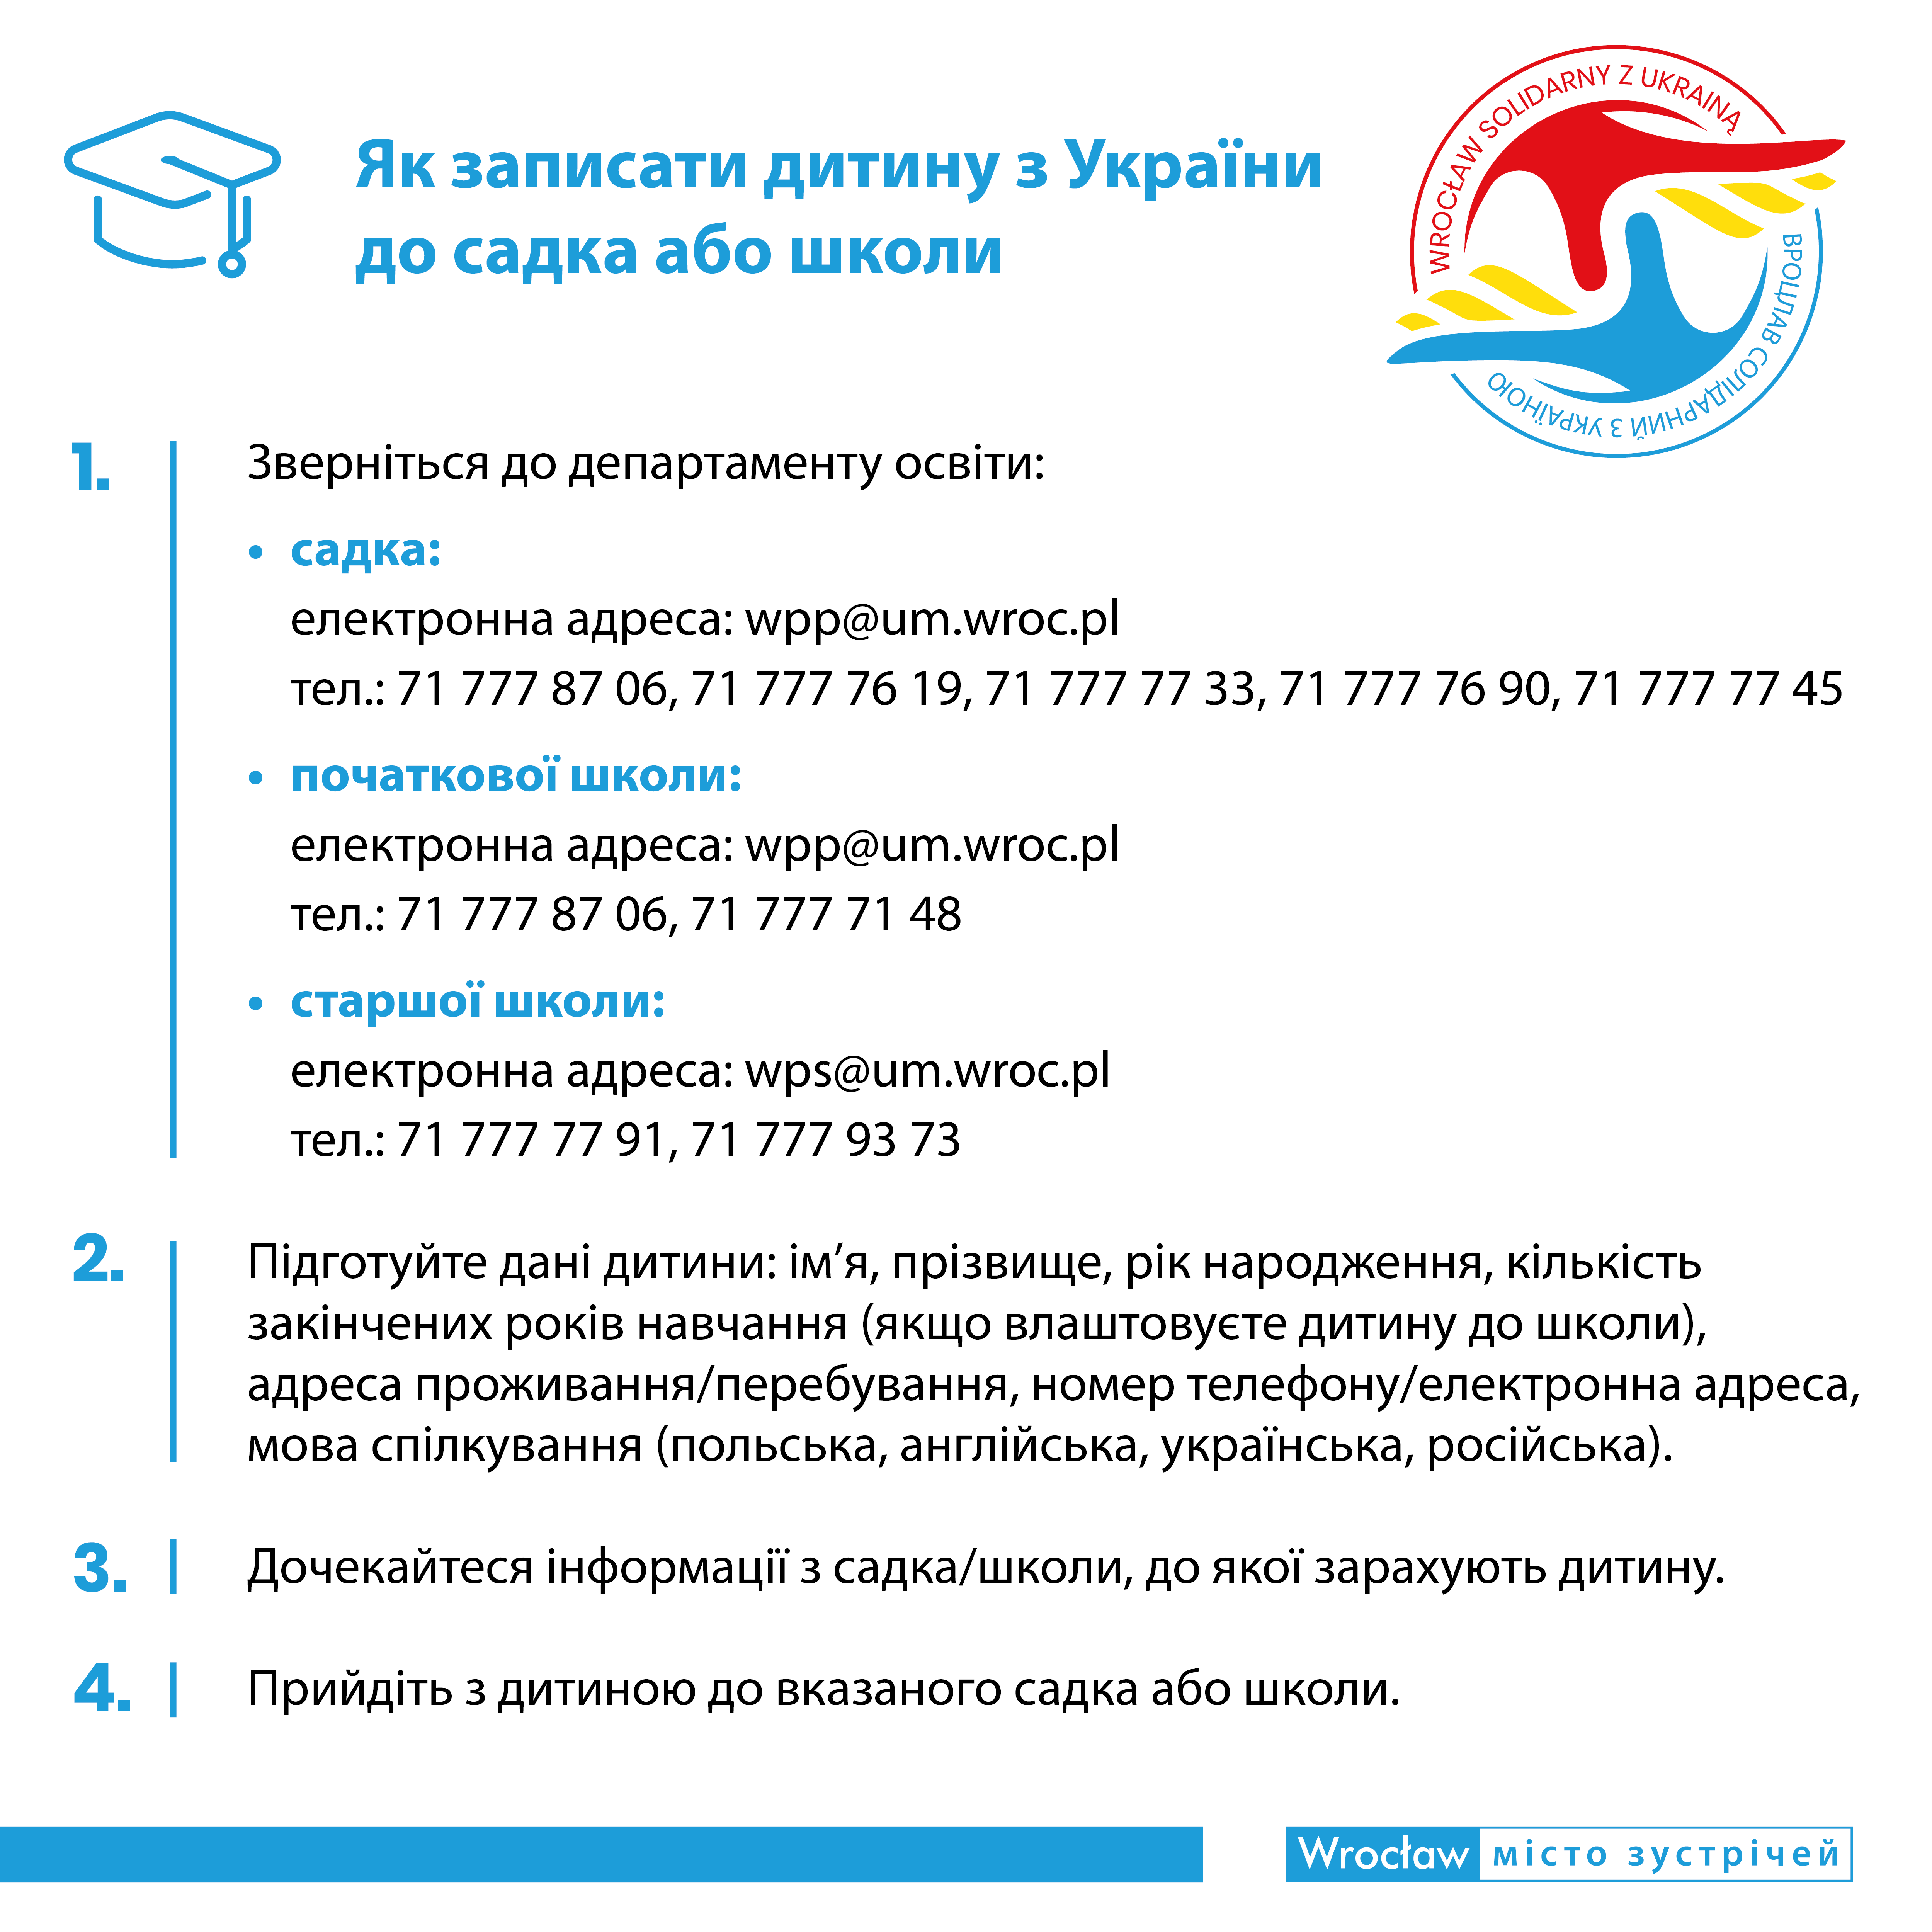 Ulotka szkola UKR 1200x1200 220303